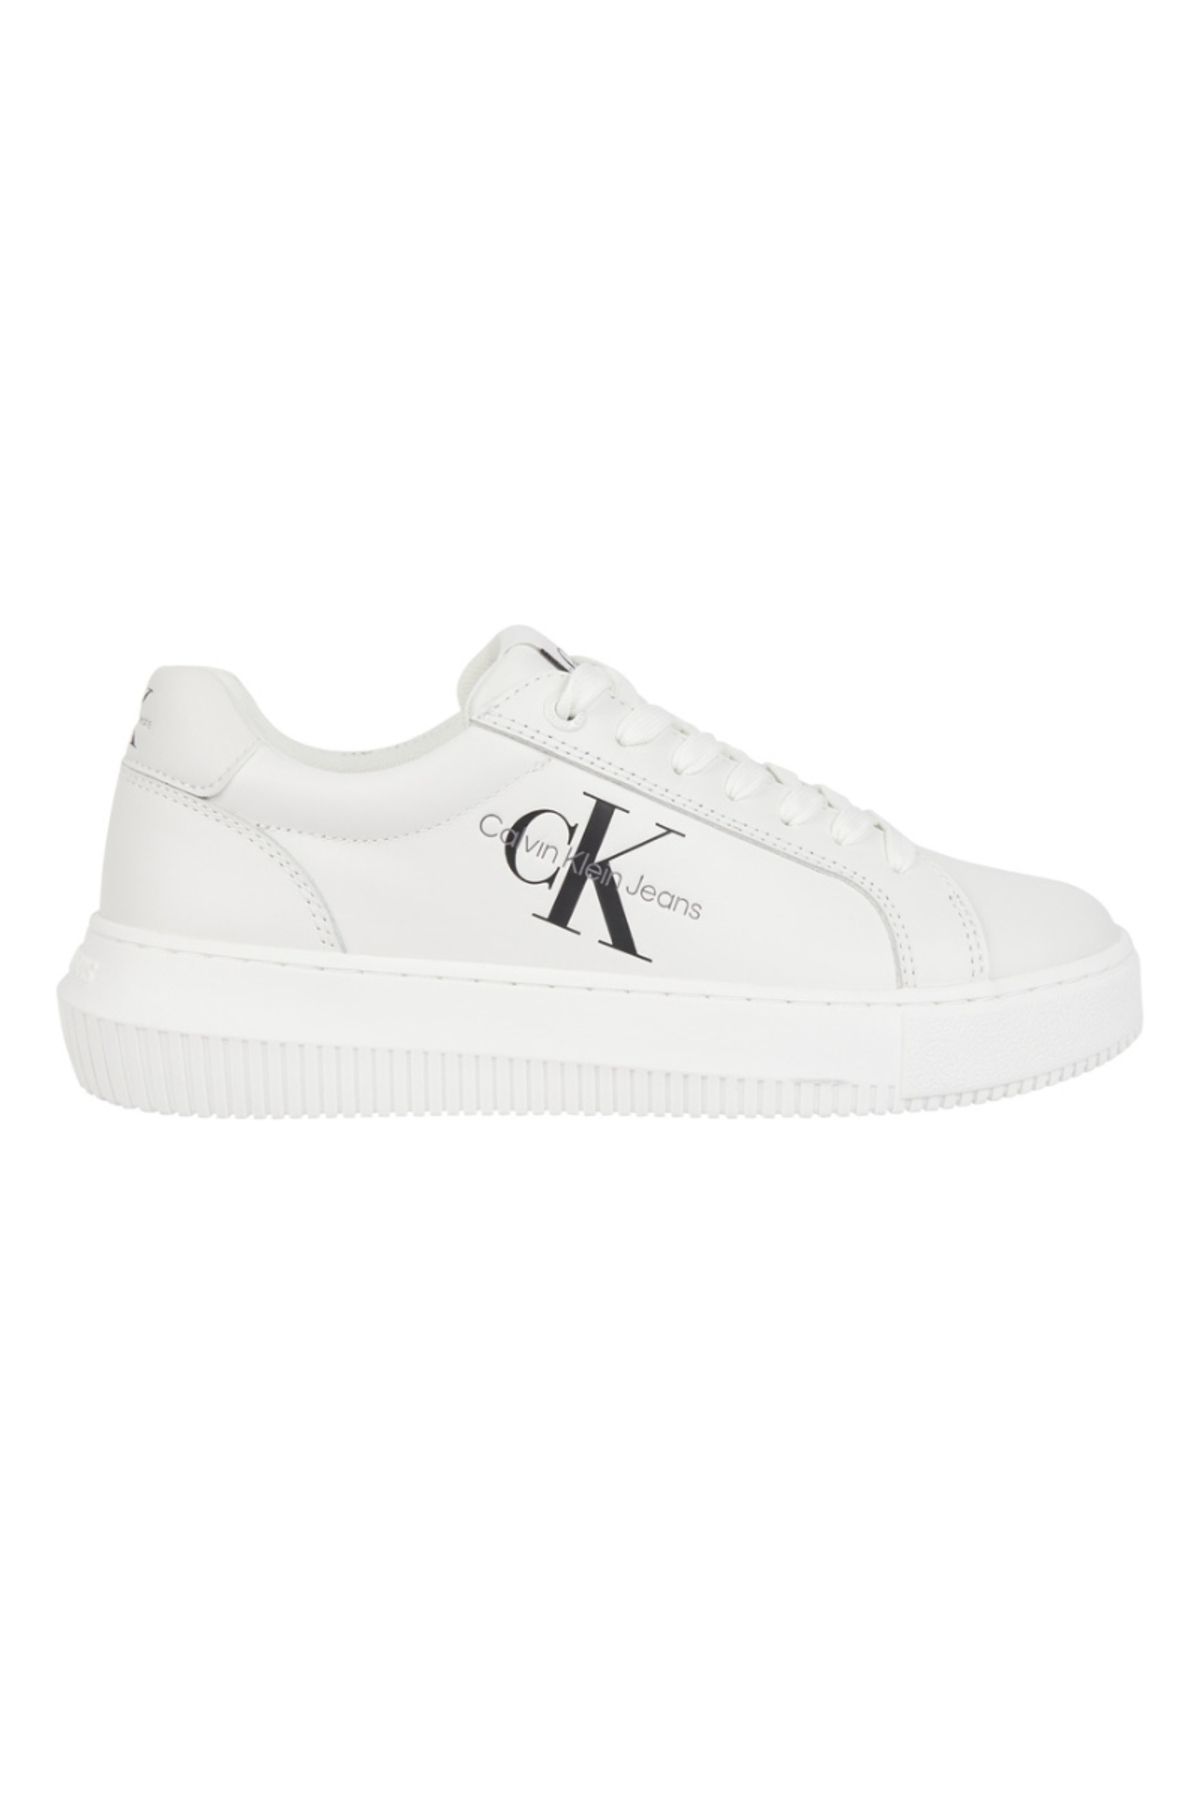 Calvin Klein Kadın Beyaz Kadın Spor Ayakkabı Yw0yw00823ybr-beyaz